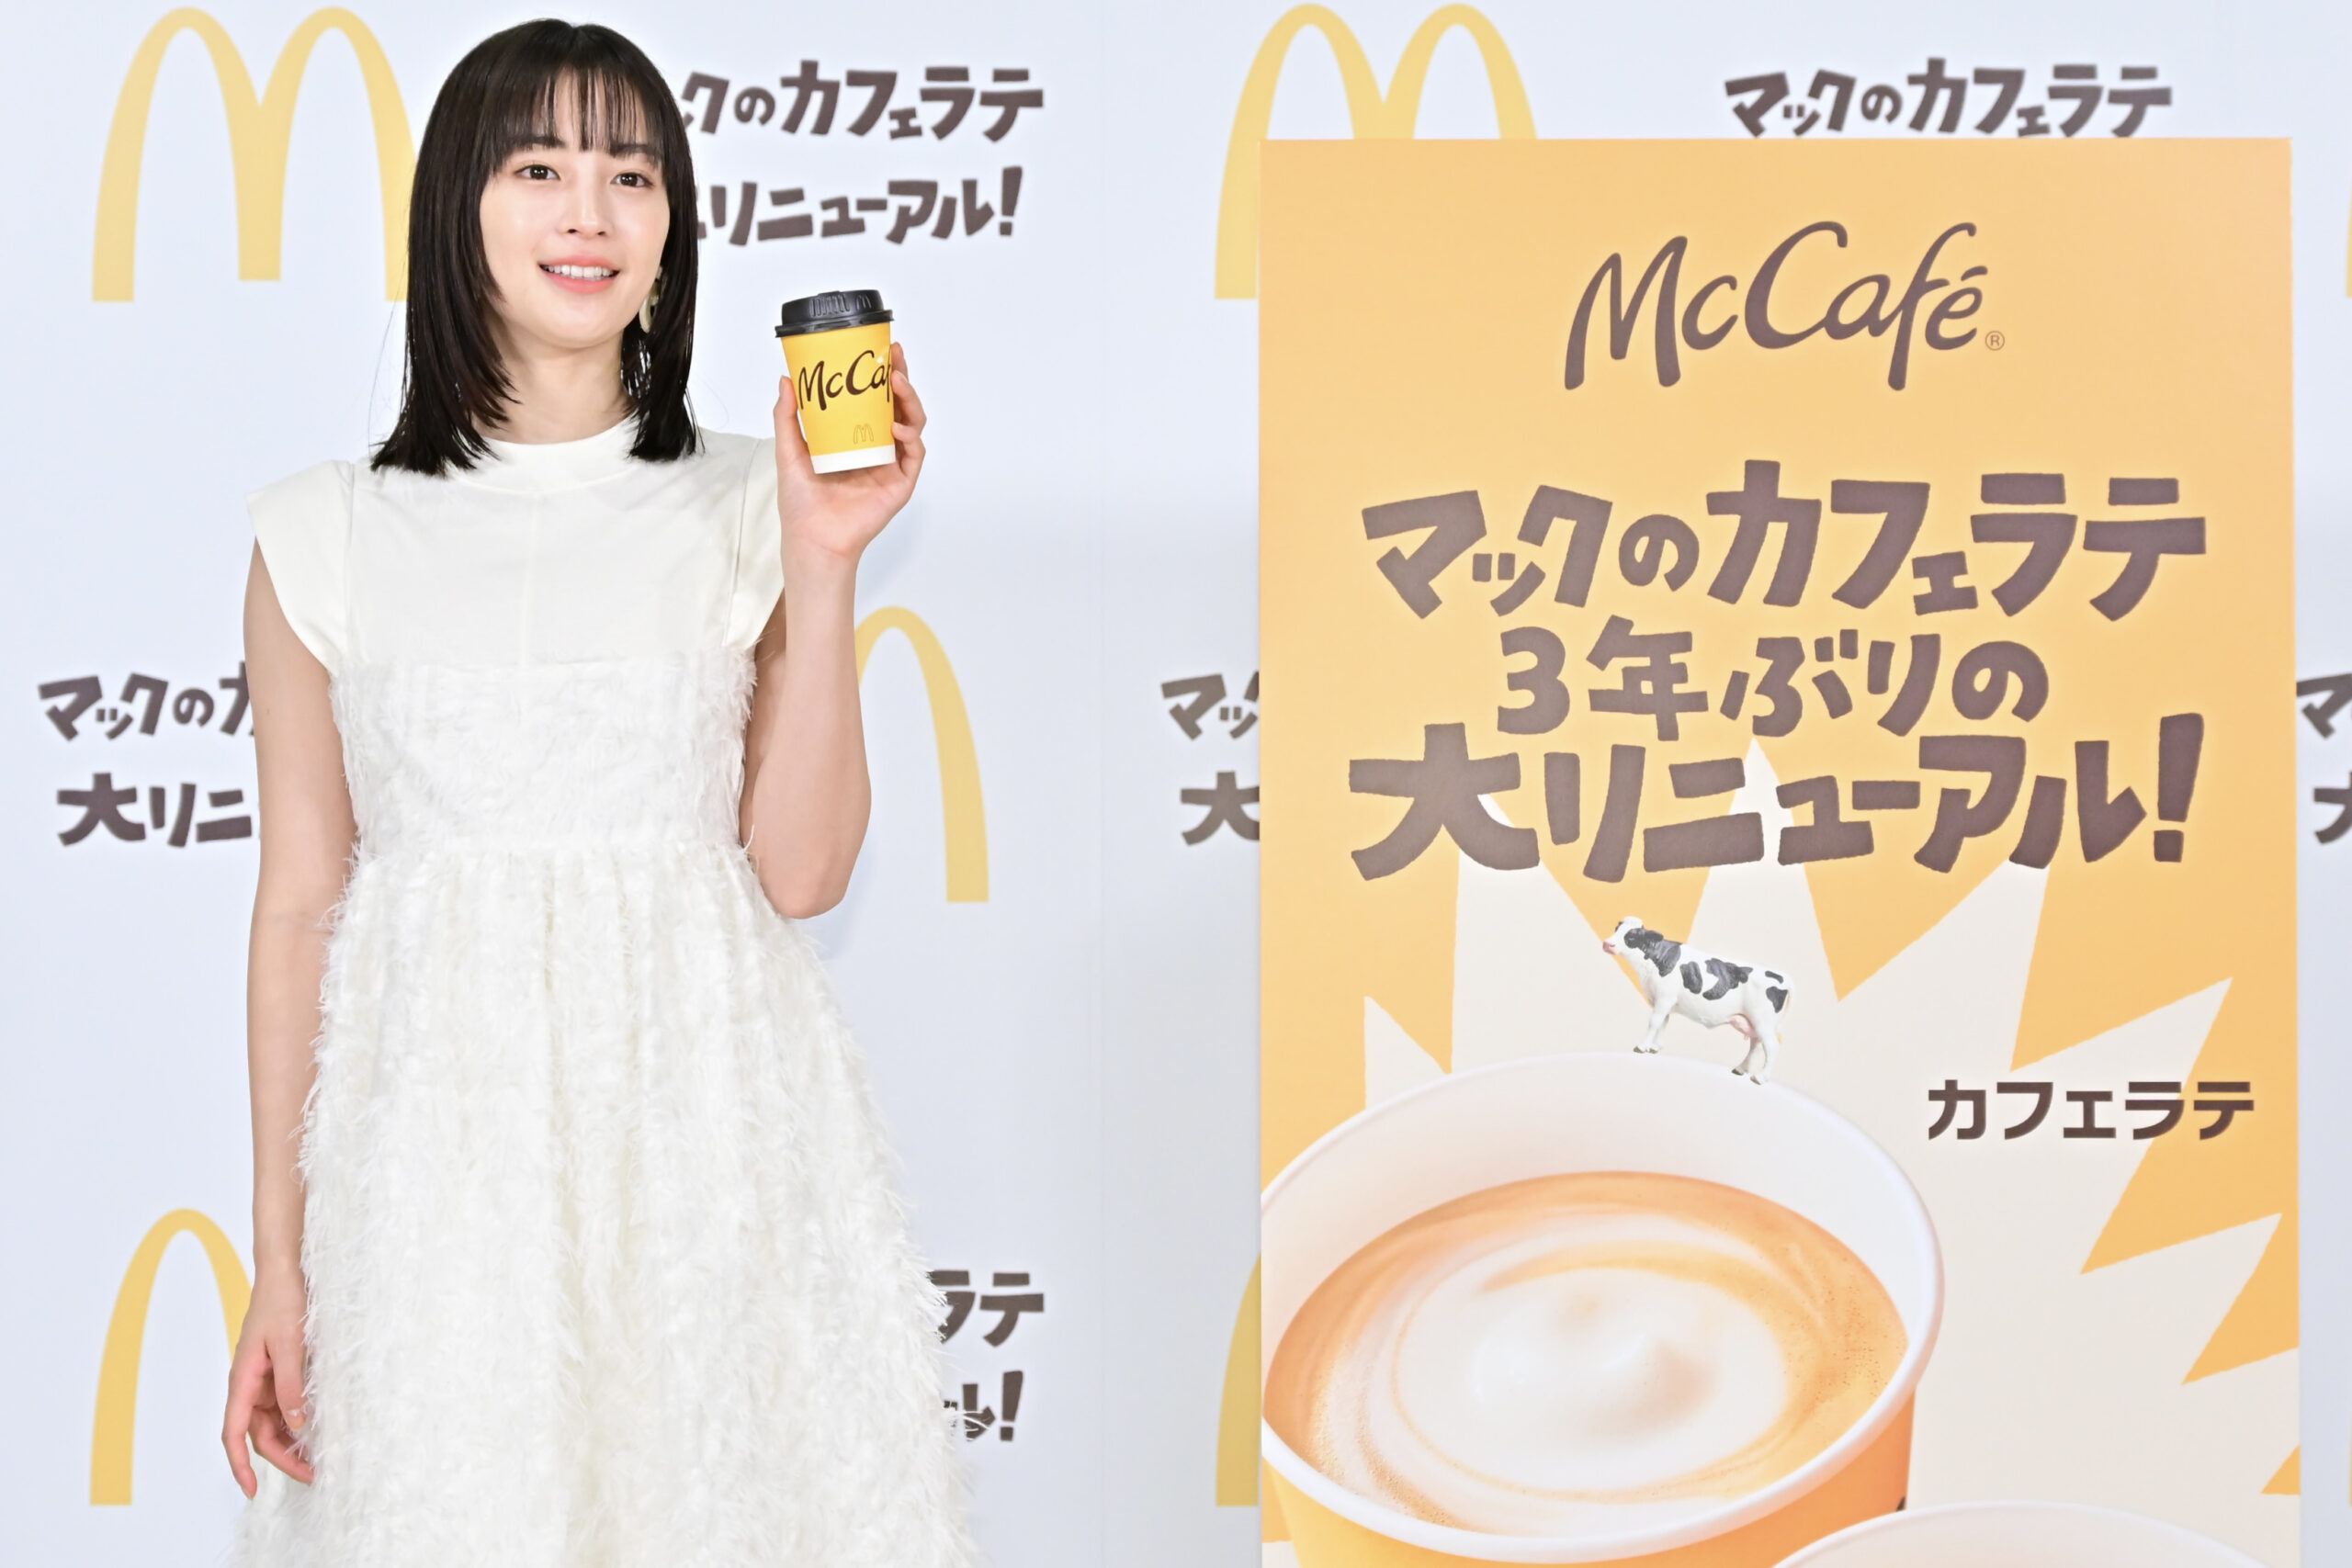 東京都内で1月15日、「McCaféカフェラテ・キャラメルラテリニューアルイベント」が行われ、マクドナルド社が約3年ぶりに大リニューアルしたカフェラテおよびキャラメルラテをお披露目した。